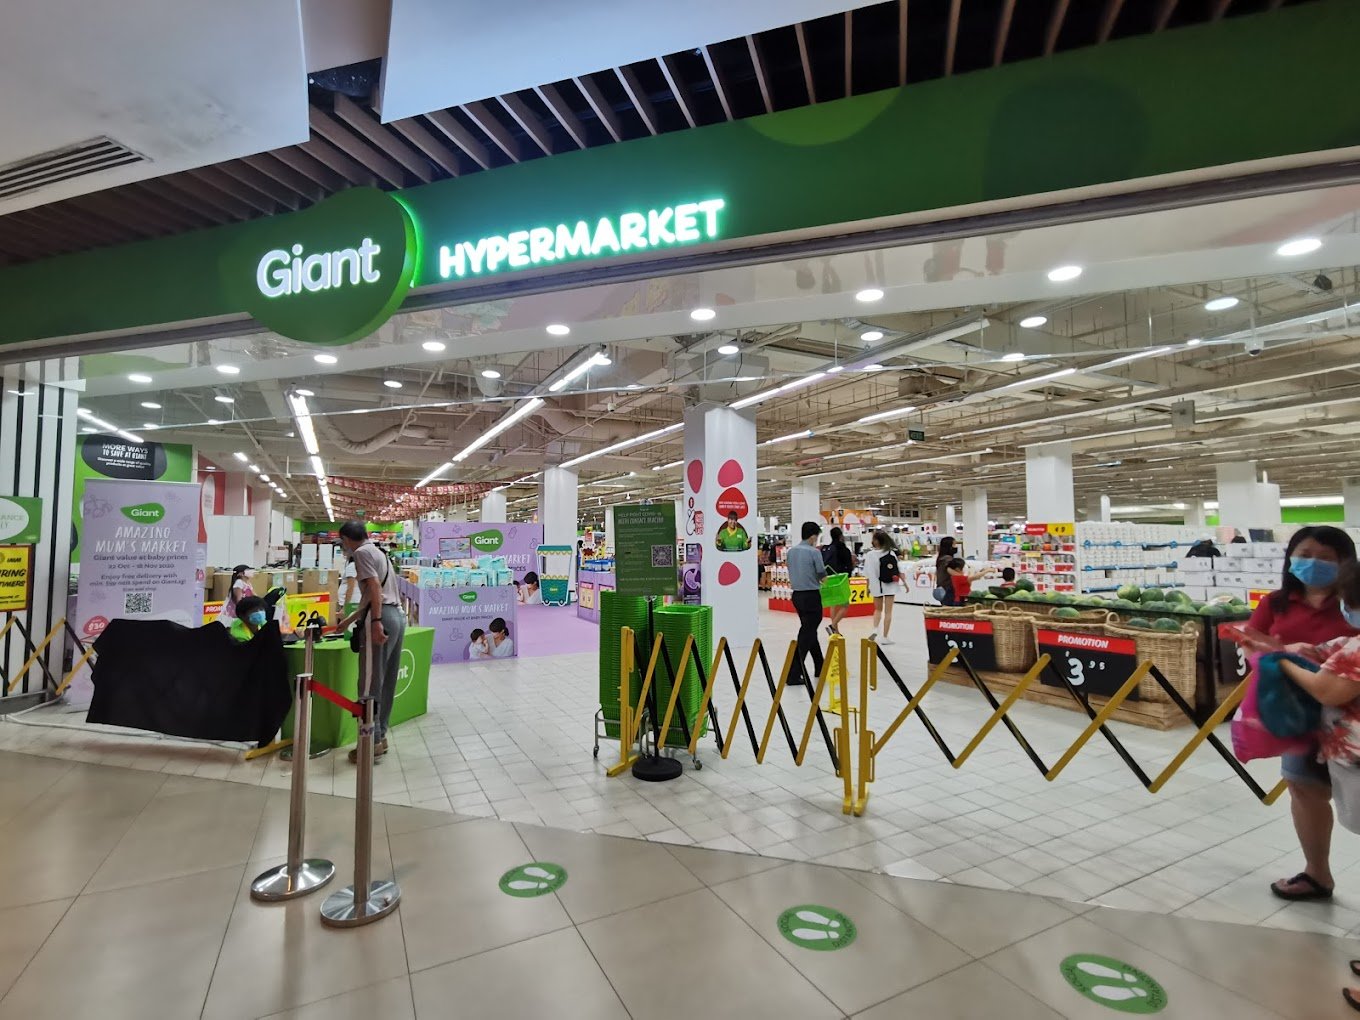 giant hypermarket